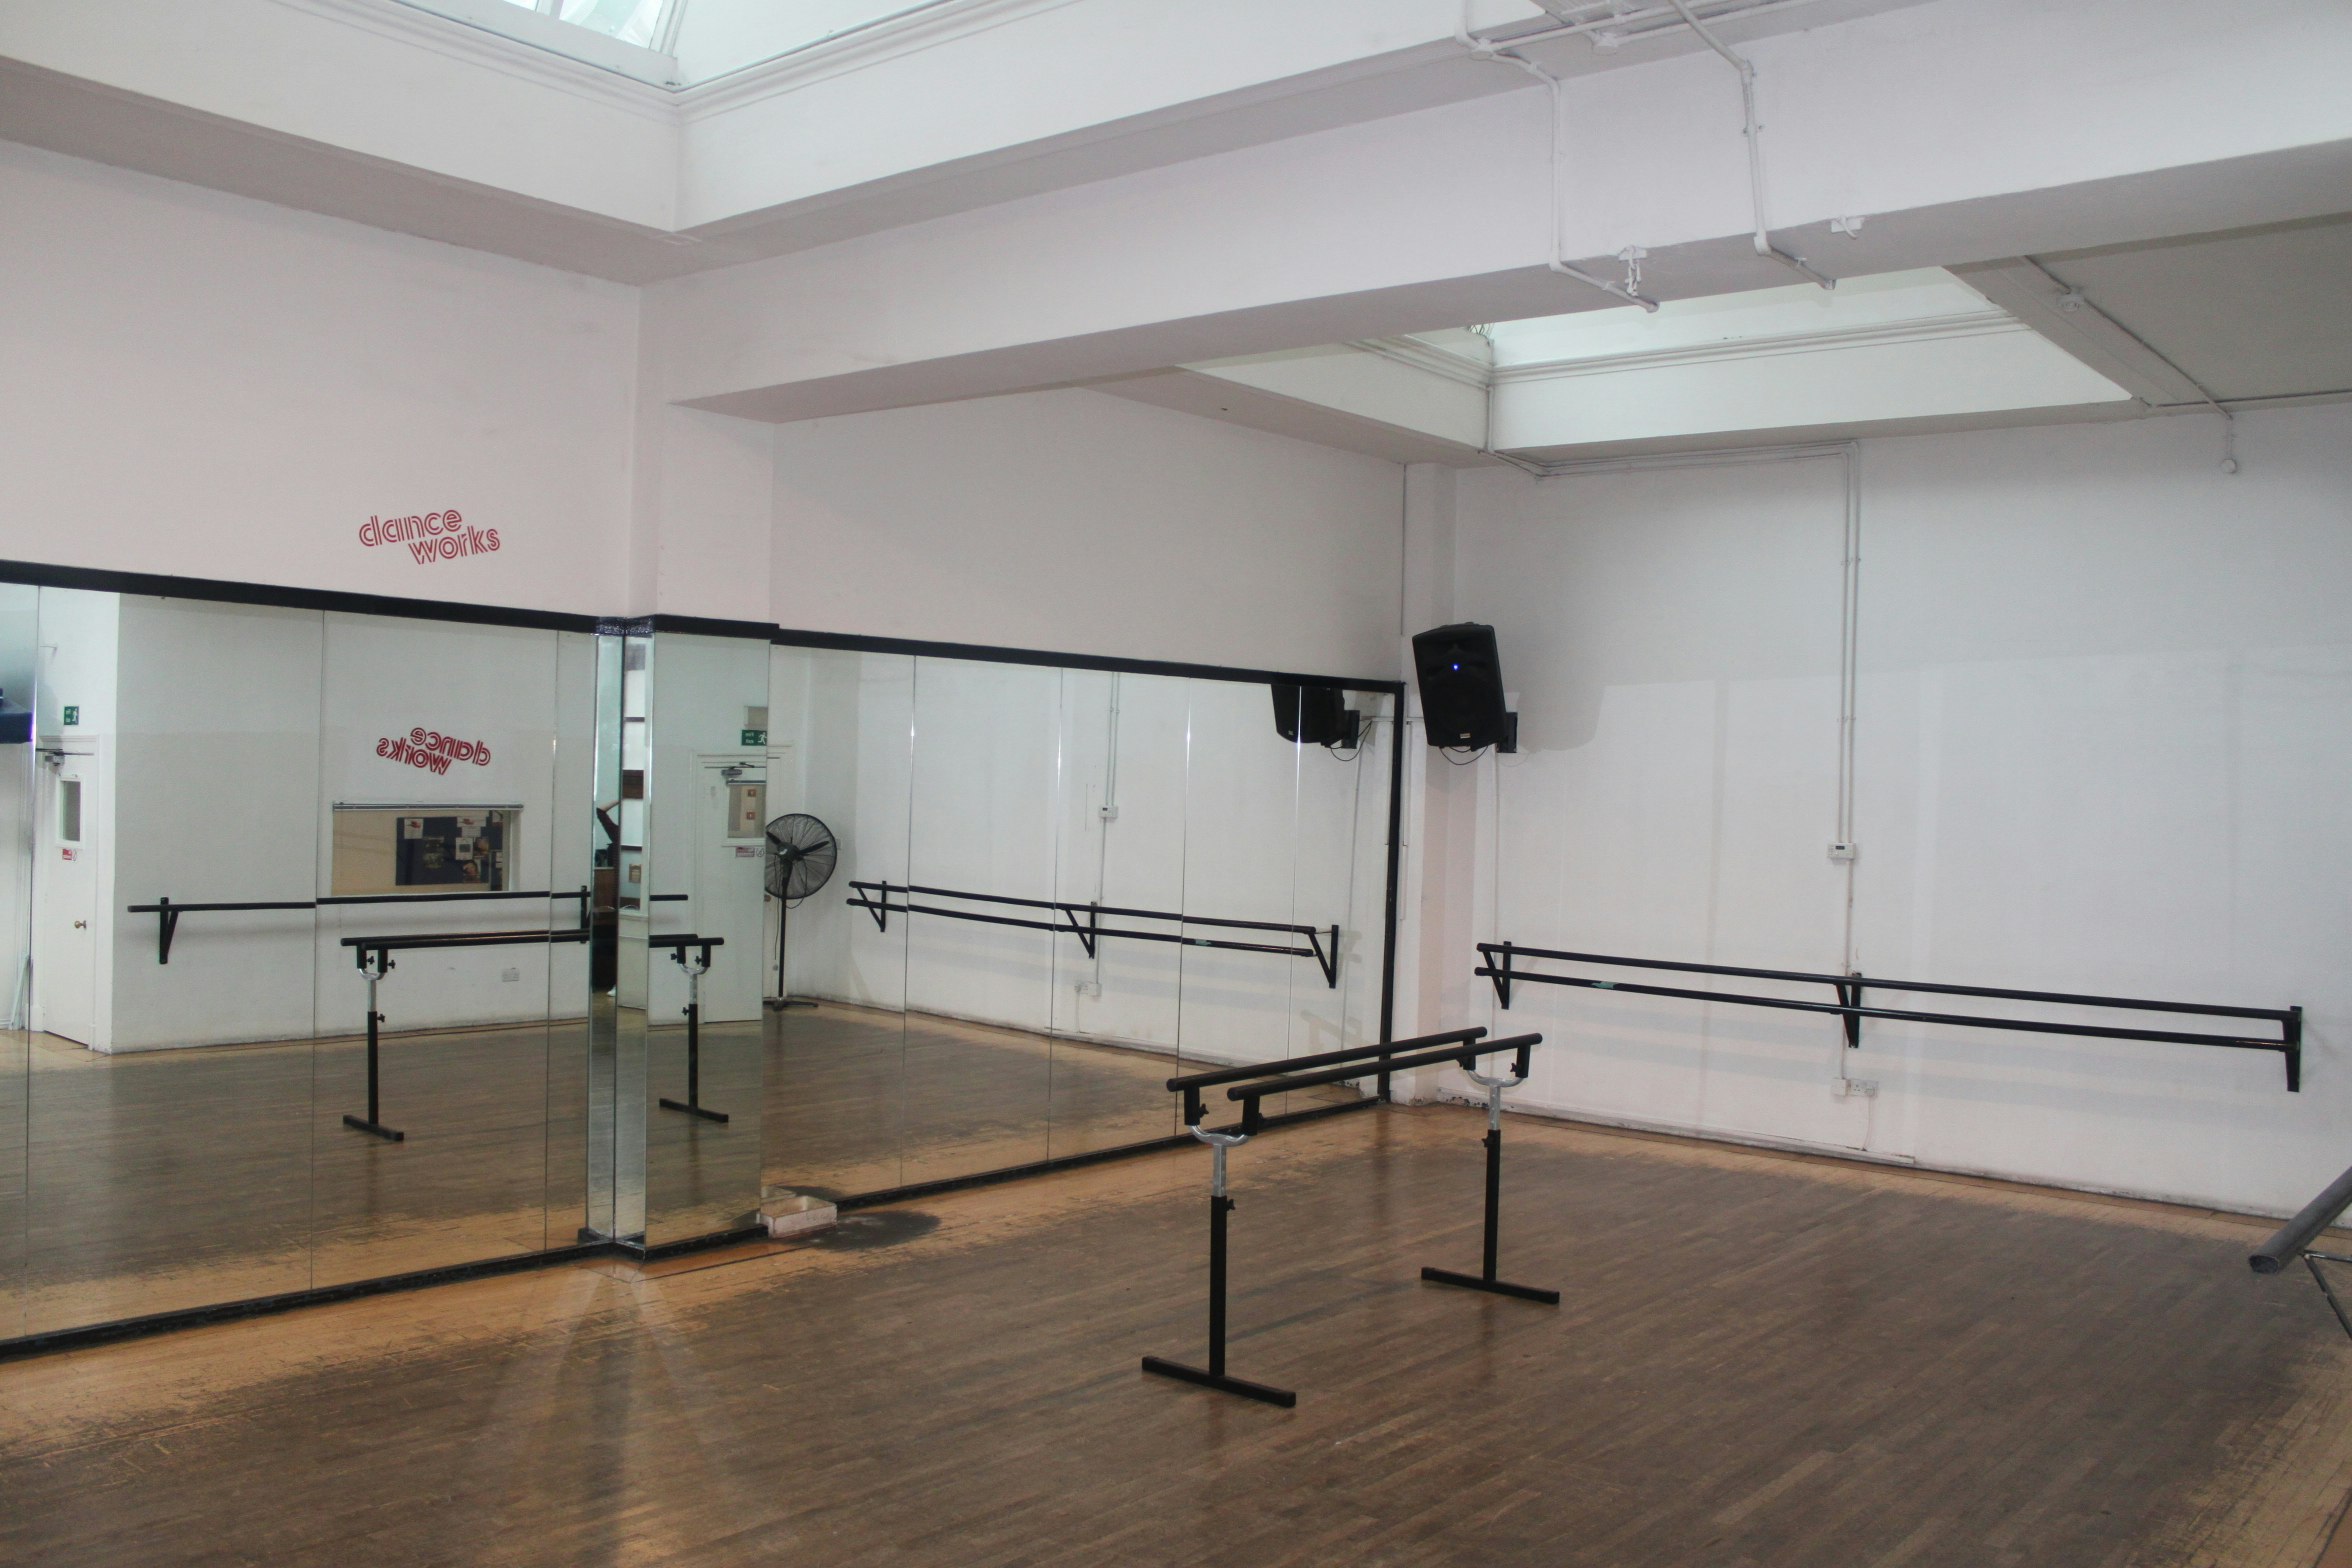 Recording Studios Venues in London - Danceworks